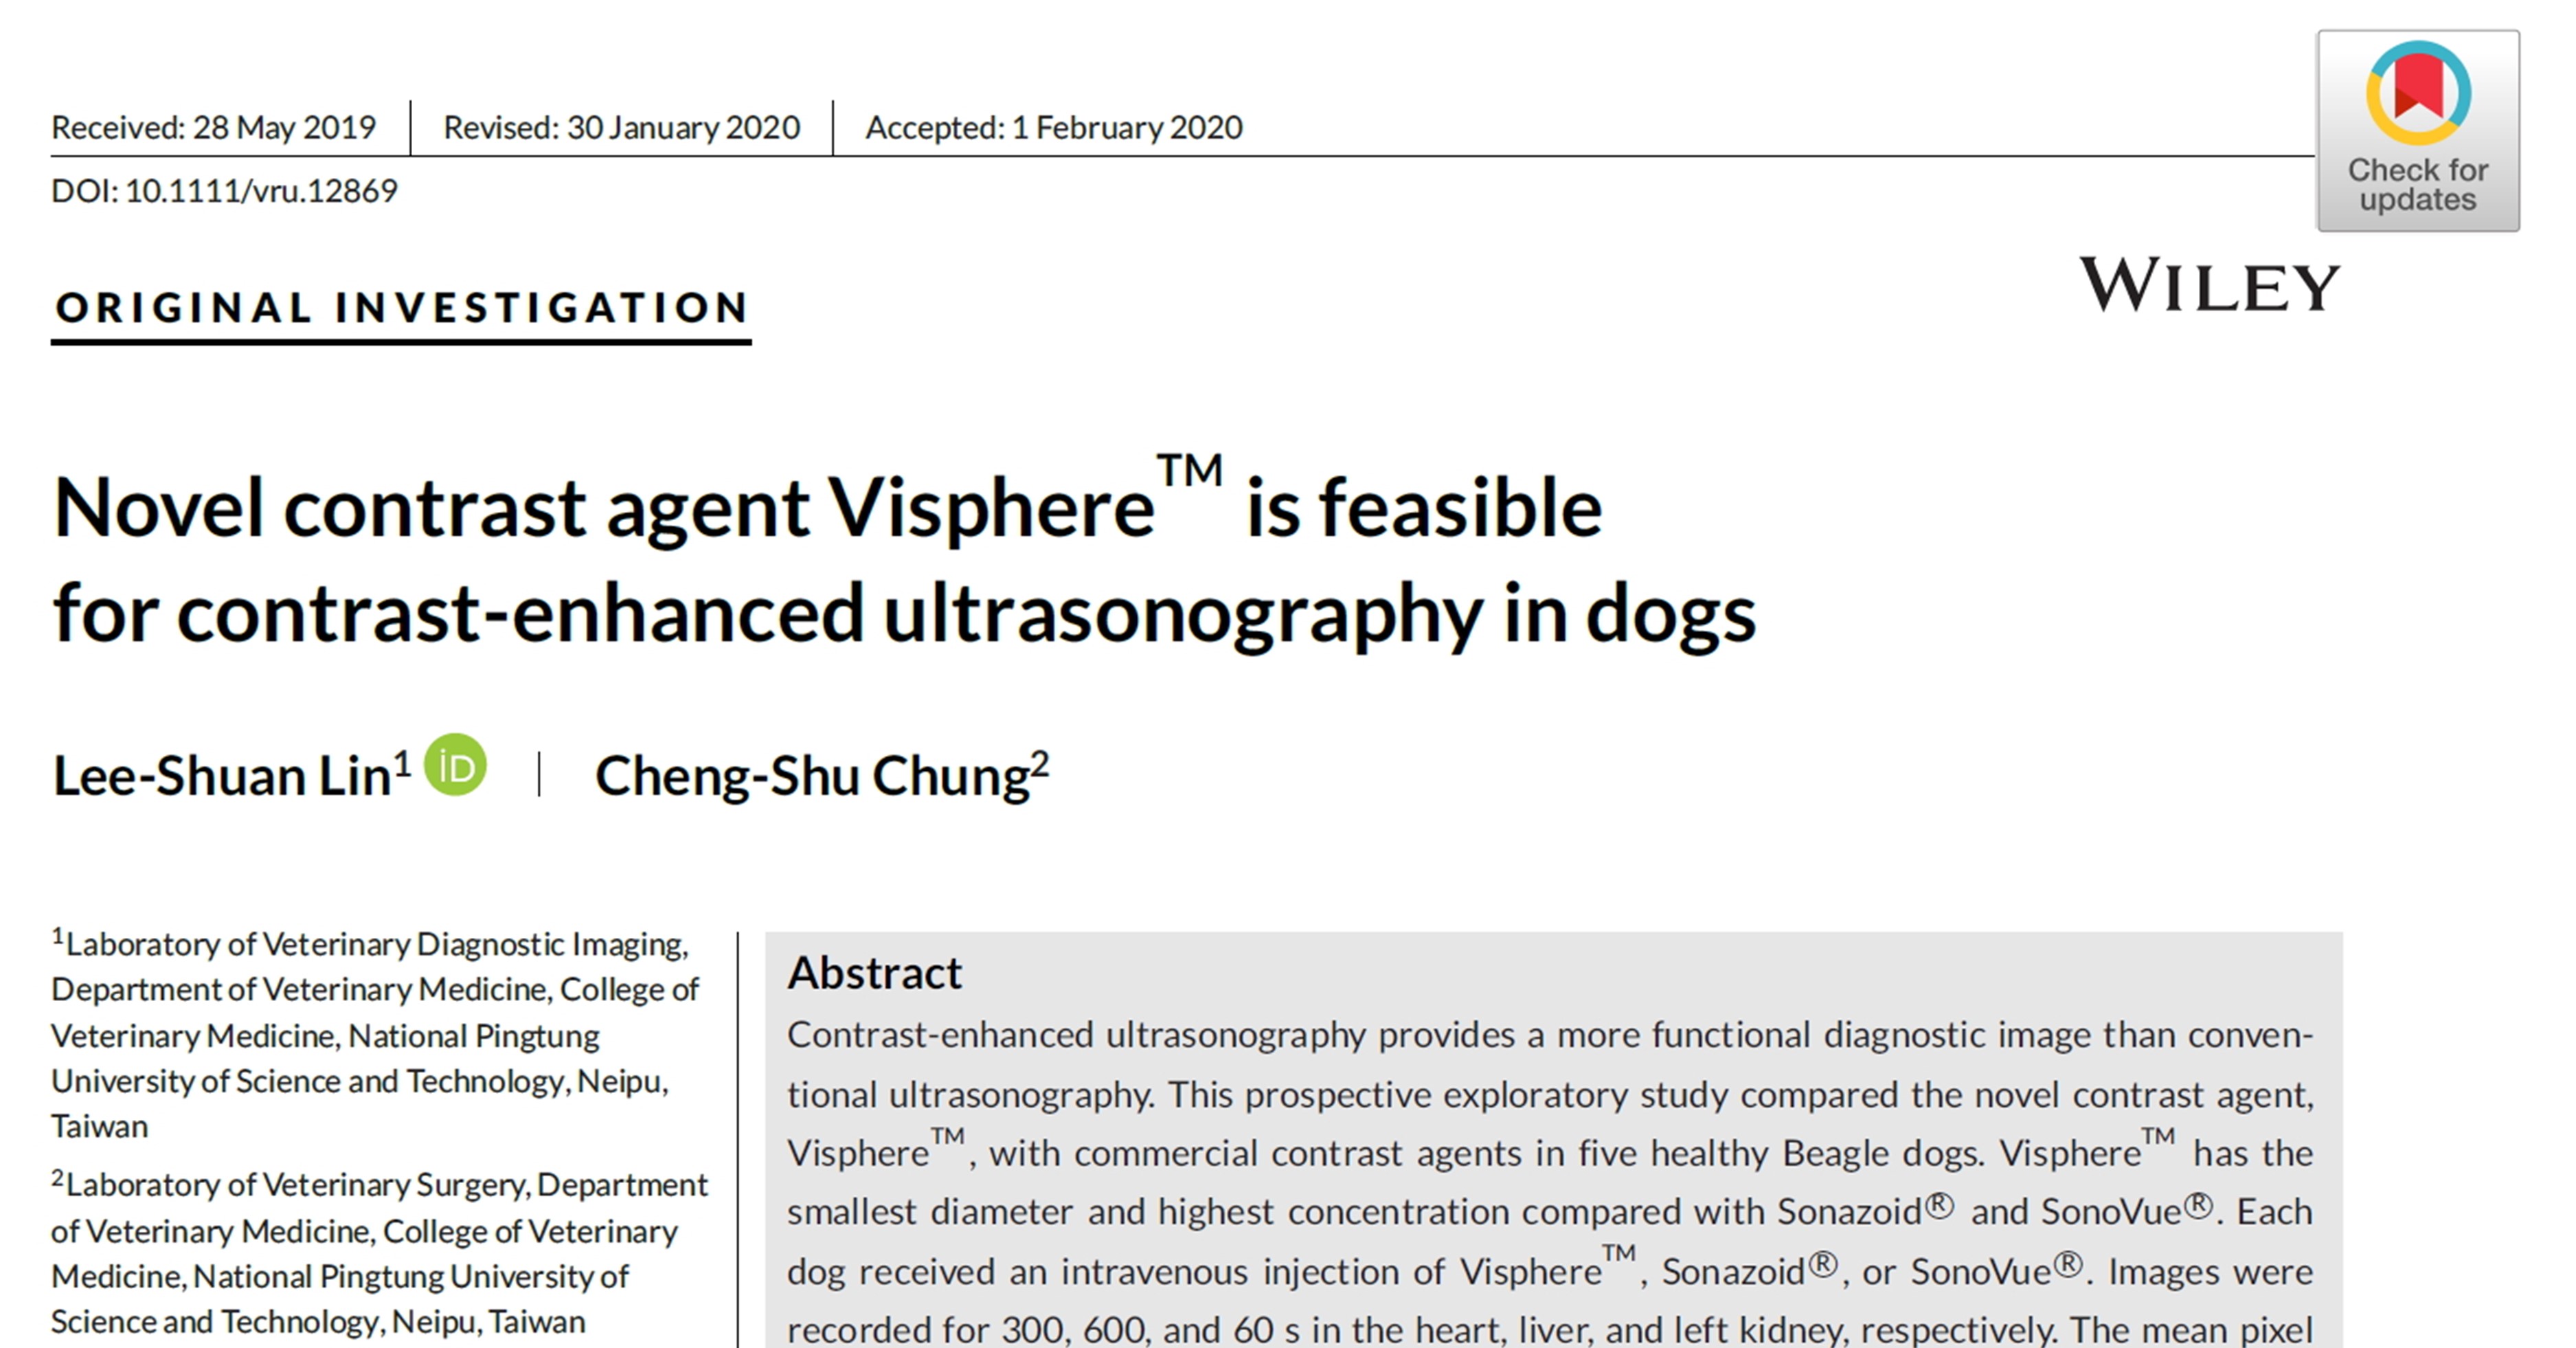 快訊 林莉萱博士團隊 確認新顯影劑visphere 用於犬超音波之可行性研究 獲veterinary Radiology Ultrasound 刊登 醫學論文與寫作工作坊 新思惟國際